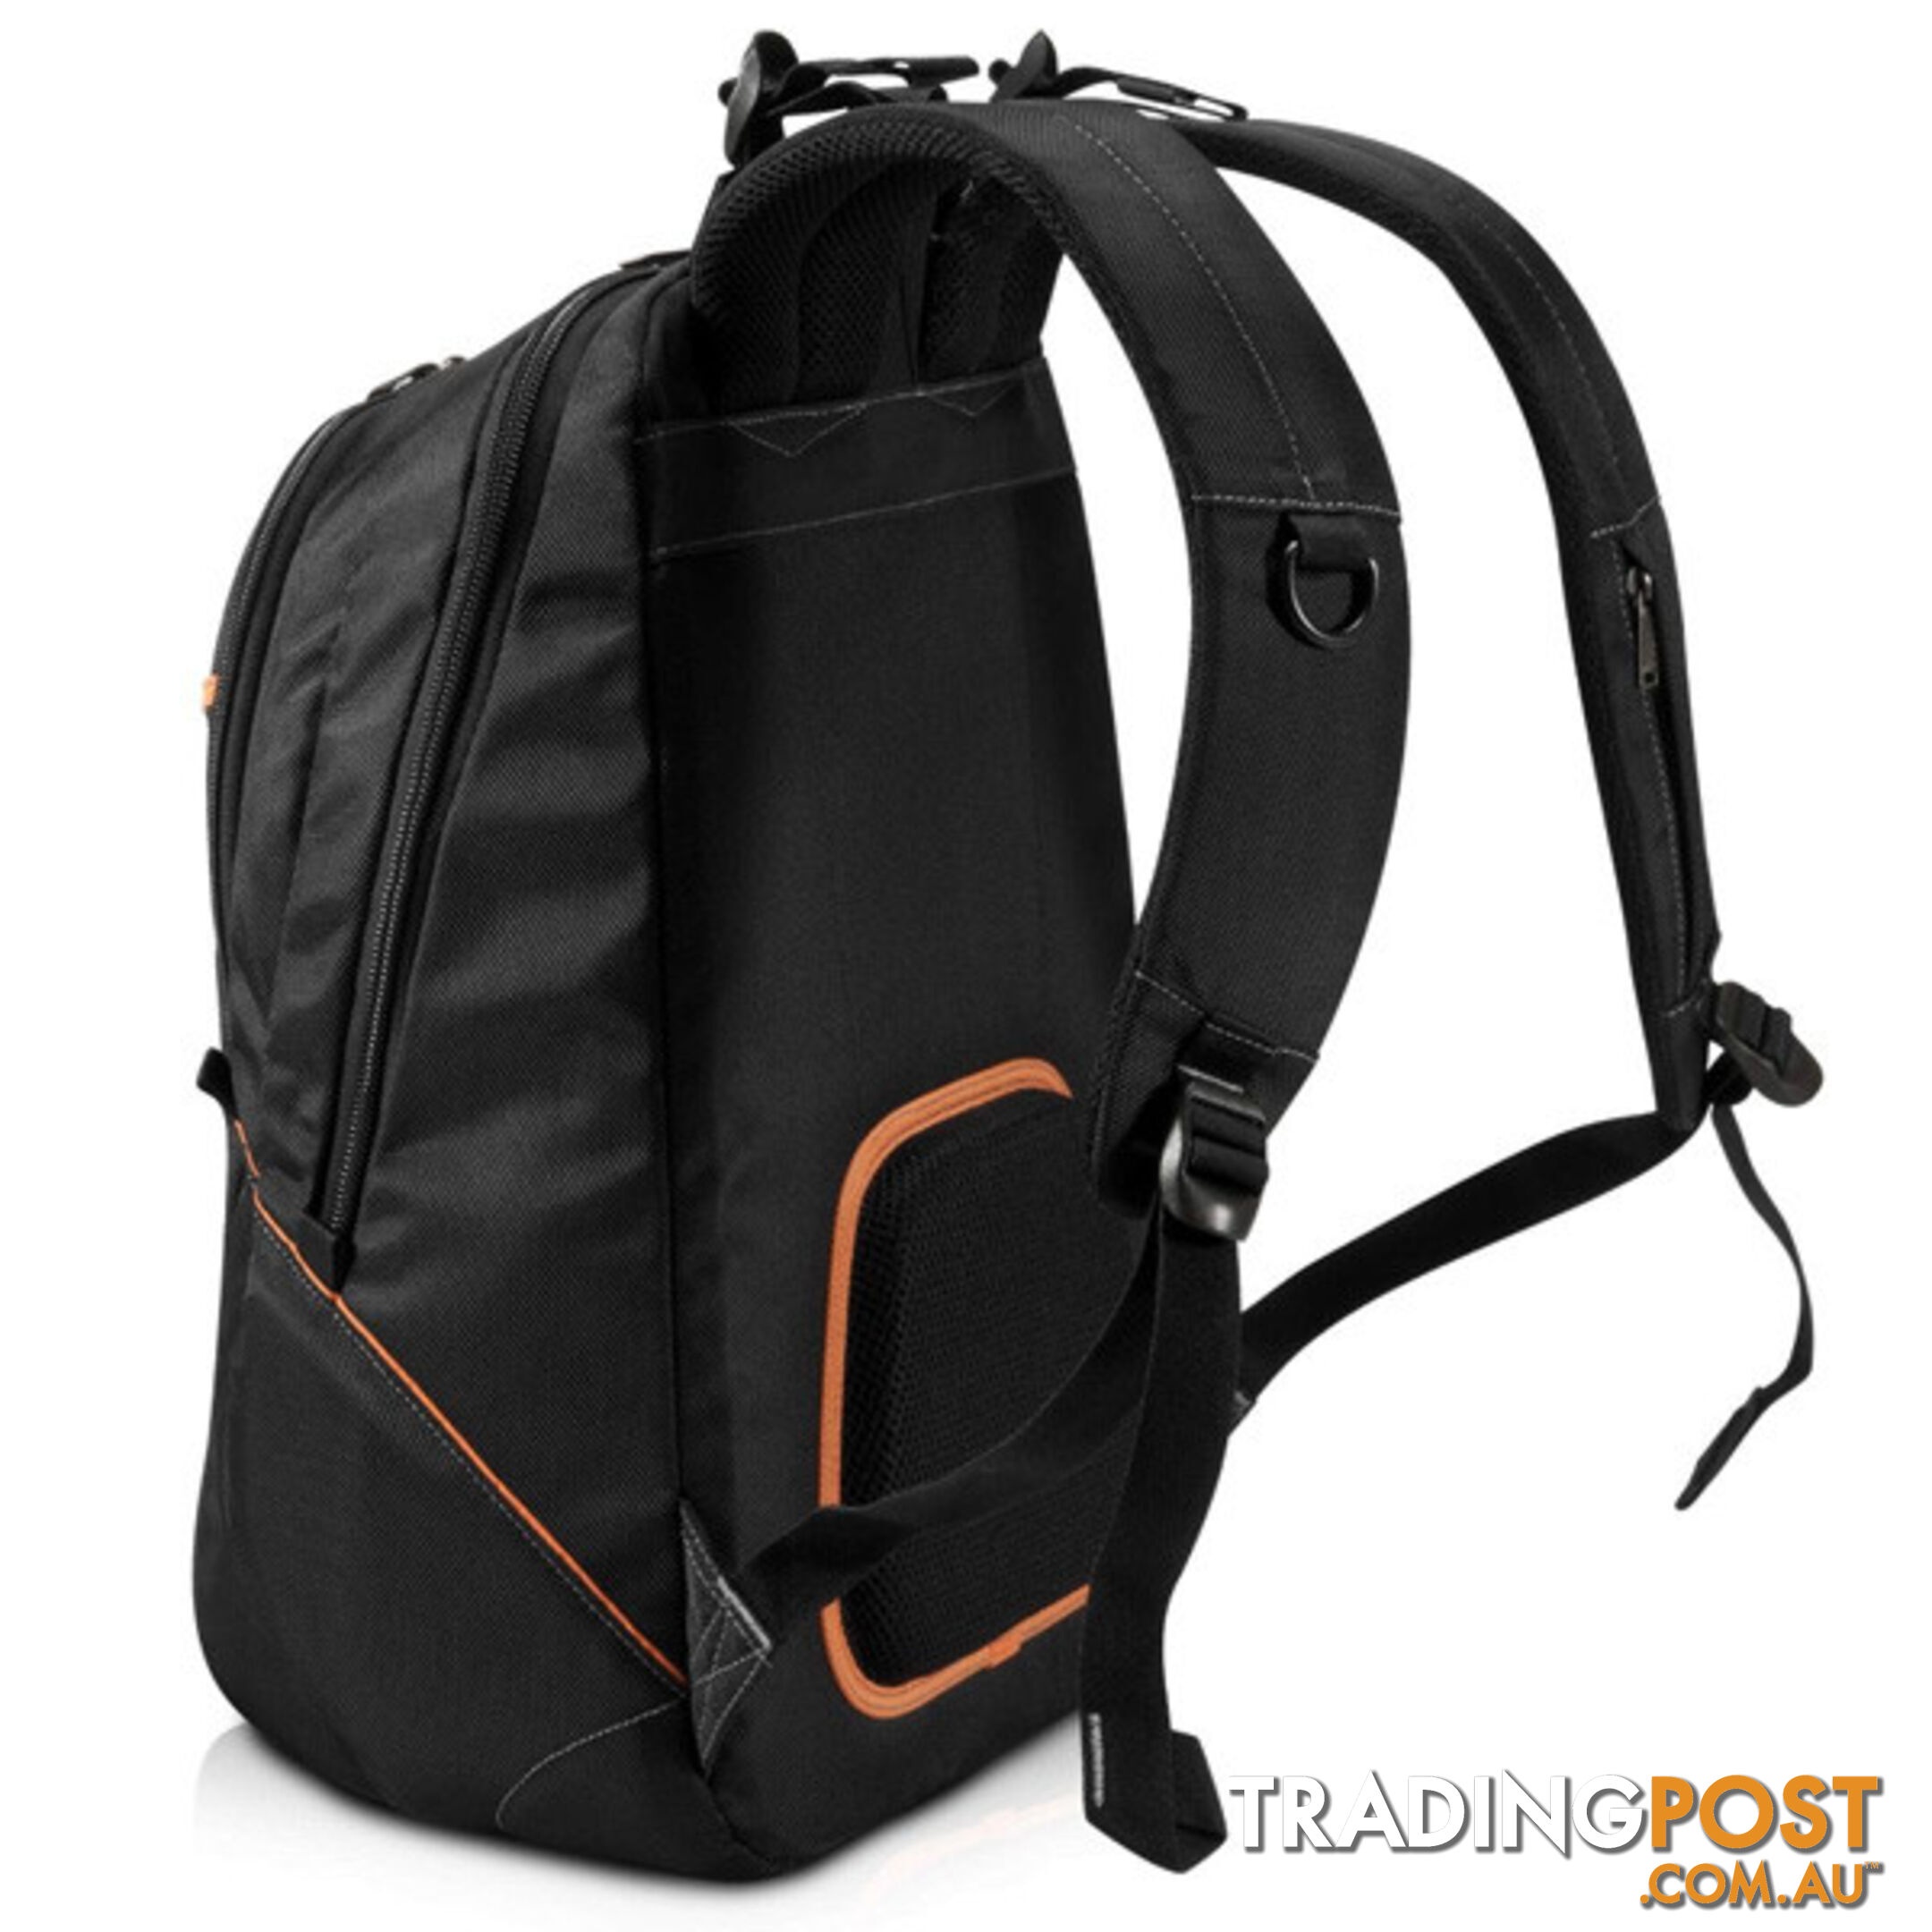 Everki Glide Laptop Backpack 17.3" EKP129